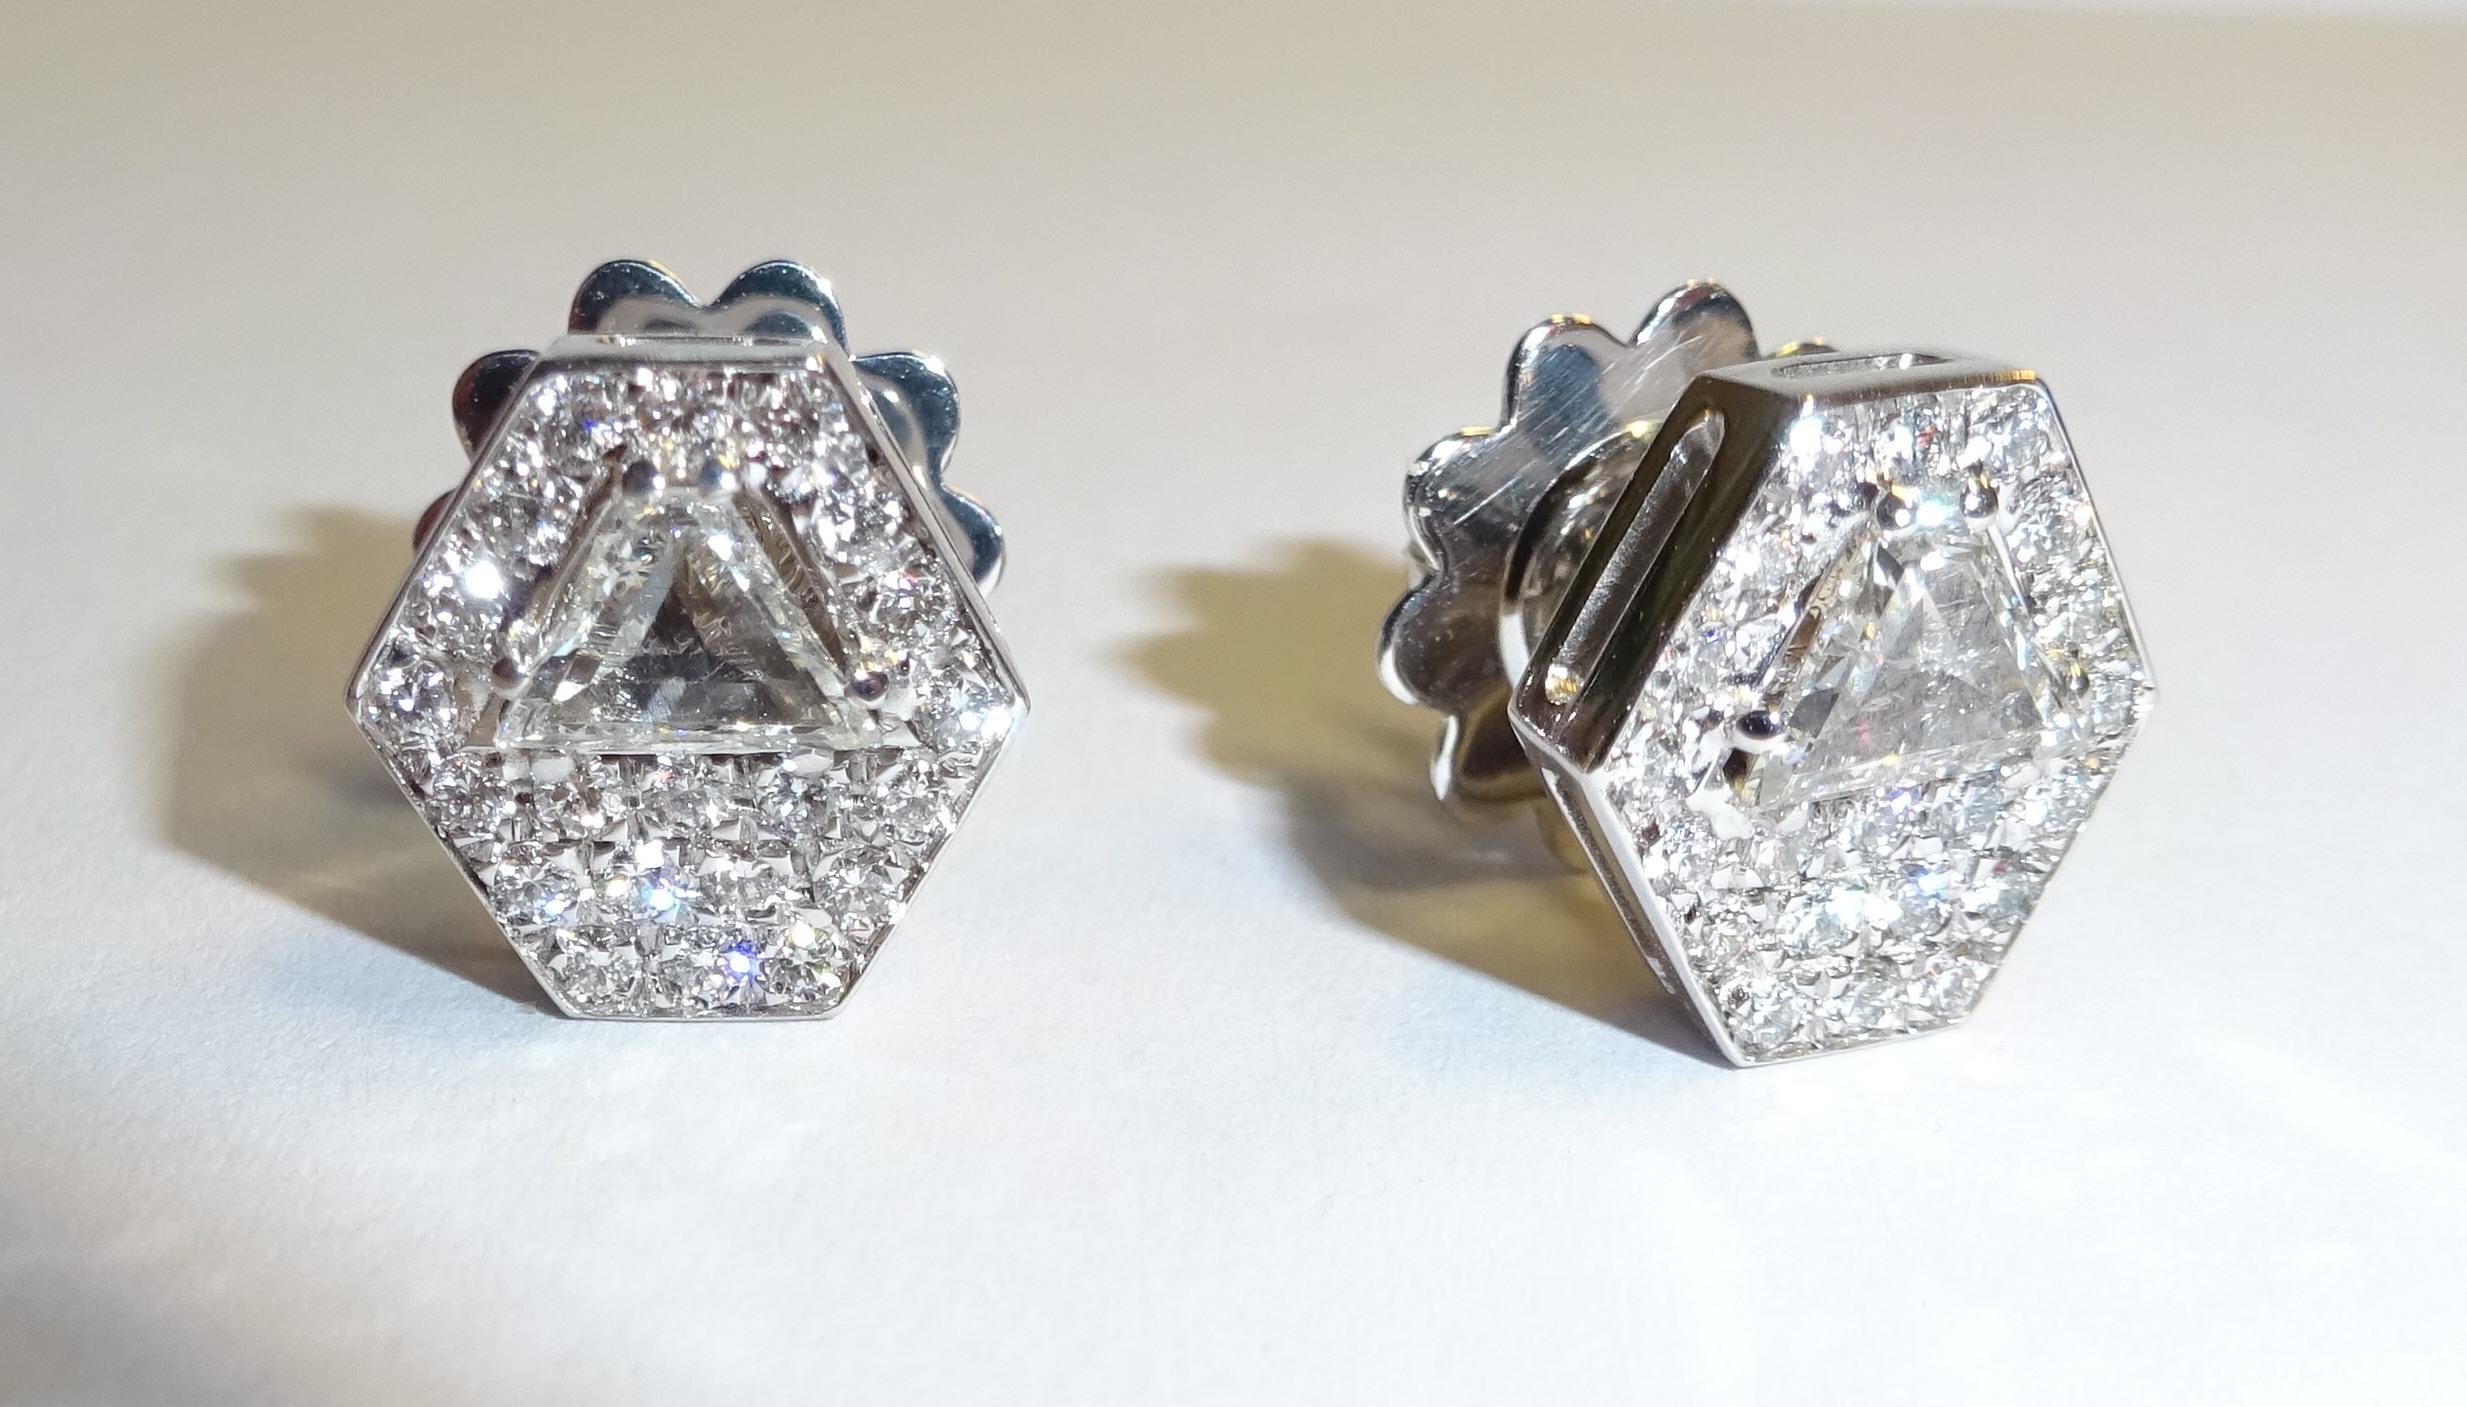 Diamant en or blanc 18 carats  Boucles d'oreilles

42 diamants 0,39 carat
2 Diam. Piège 0,59 carat



Fondée en 1974, Gianni Lazzaro est une entreprise familiale de joaillerie basée à Düsseldorf, en Allemagne.
Bien que d'origine allemande, le style